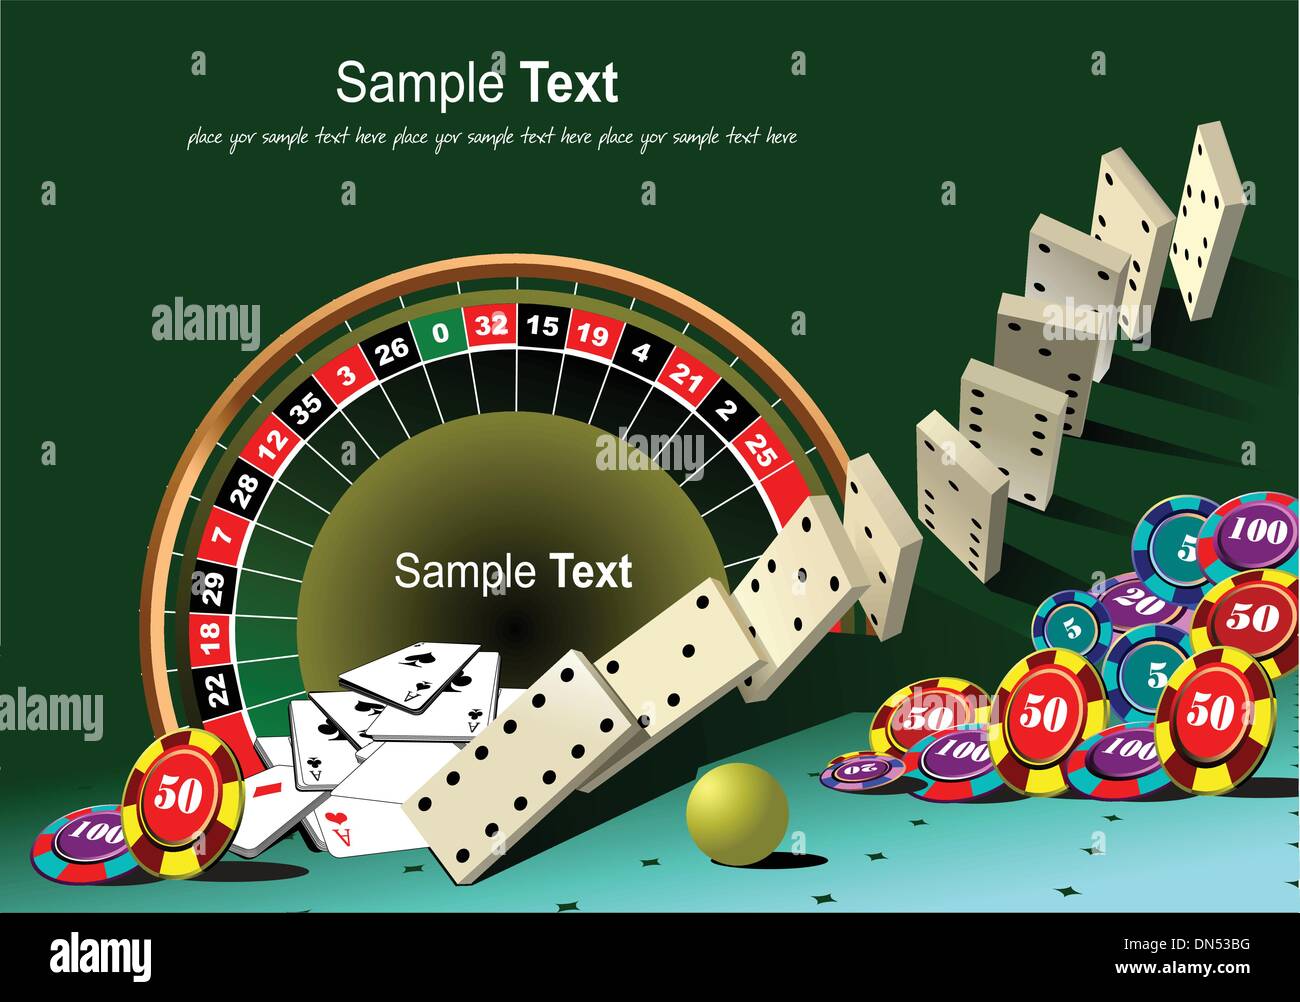 Casino-Elemente mit Domino-Prinzip. Vektor-illustration Stock Vektor